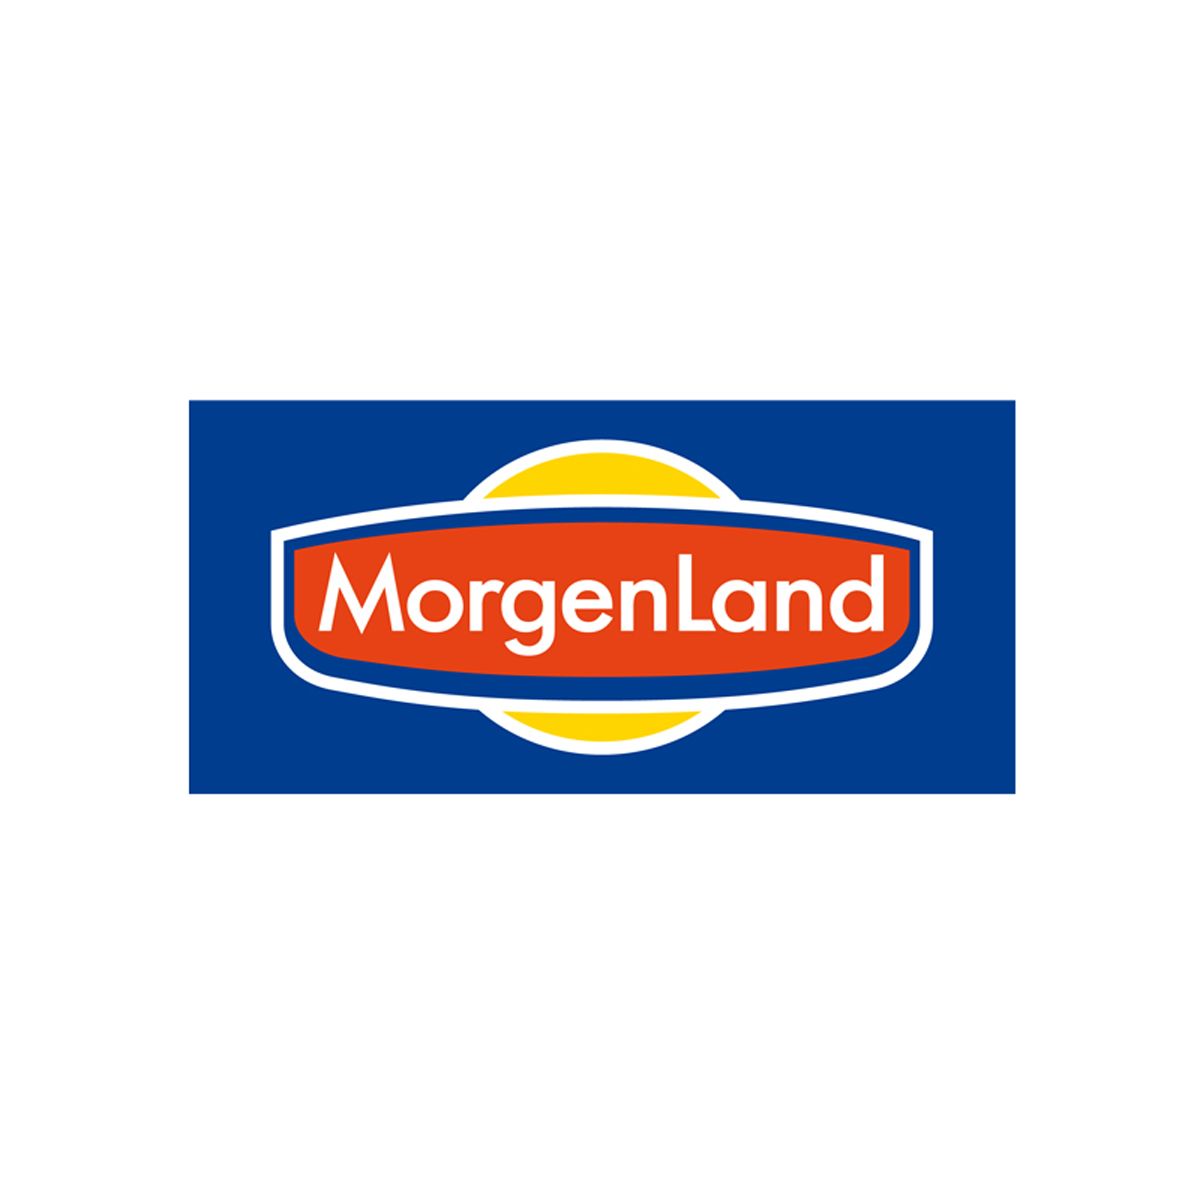  MorgenLand&nbsp;- Fantastische BIO-Produkte...